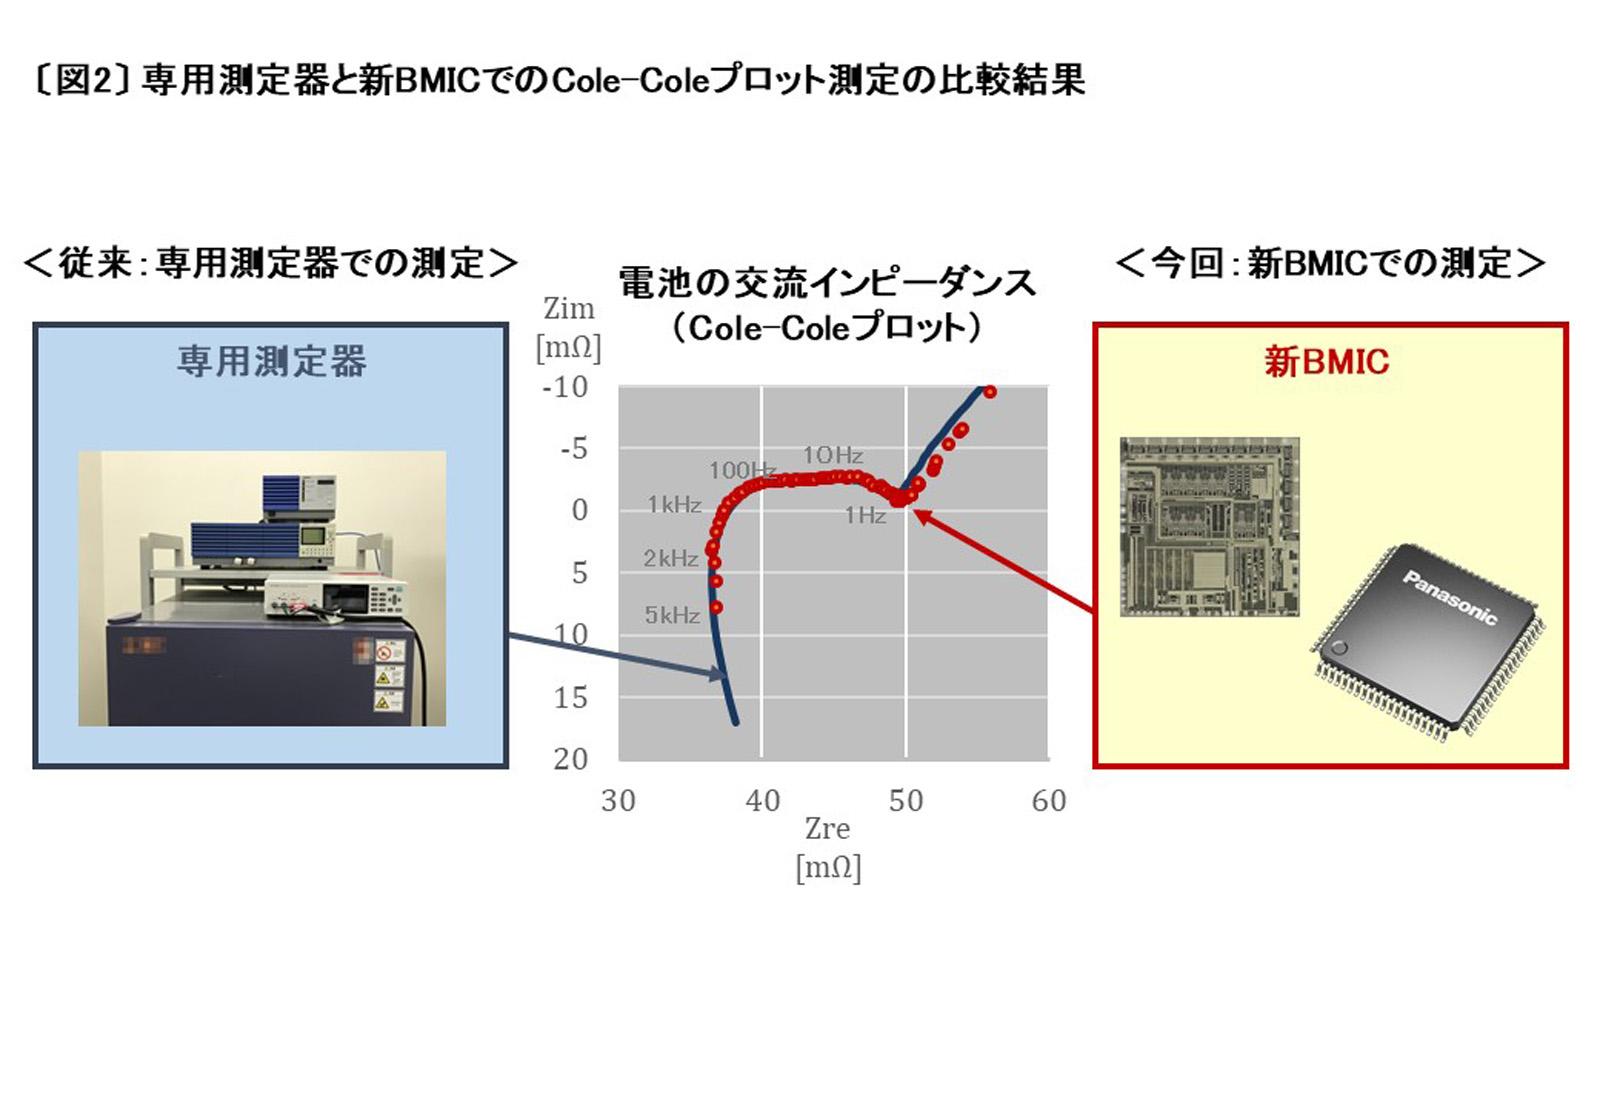 専用測定器と新BMICでのCole-Coleプロット測定の比較結果